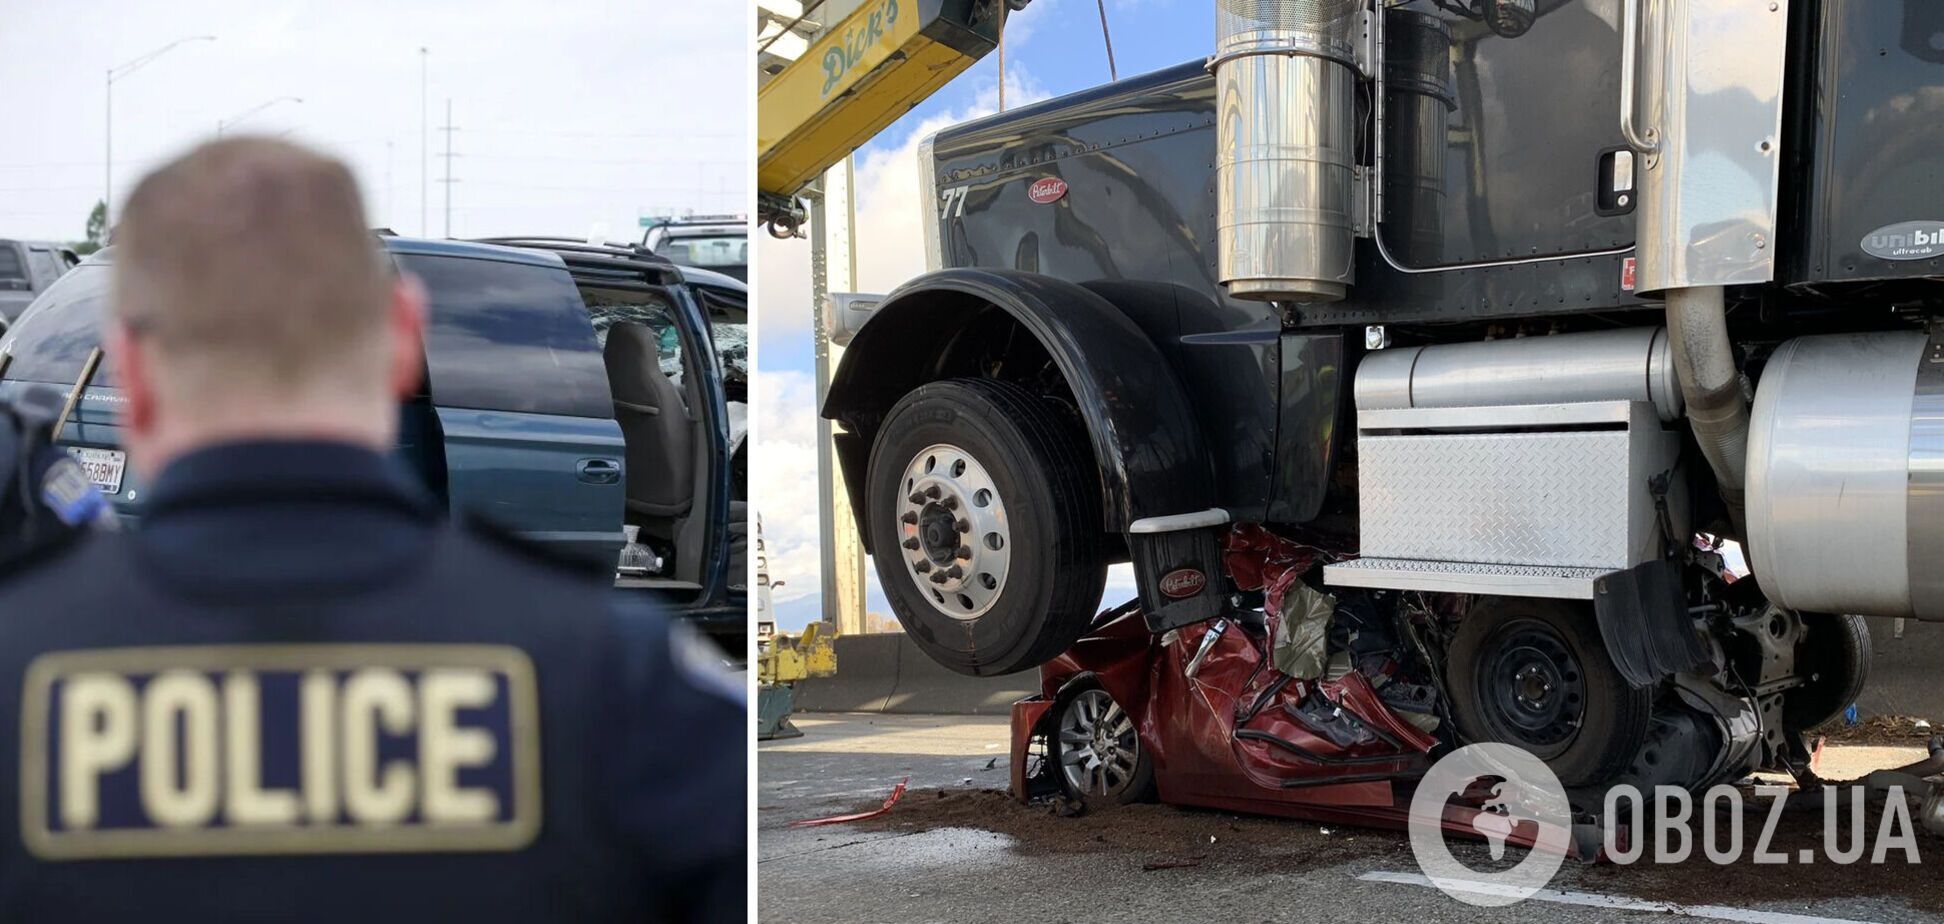 Коп сказал, что такого еще не видел: в США женщина выжила в ДТП, когда грузовик полностью смял ее авто. Фото